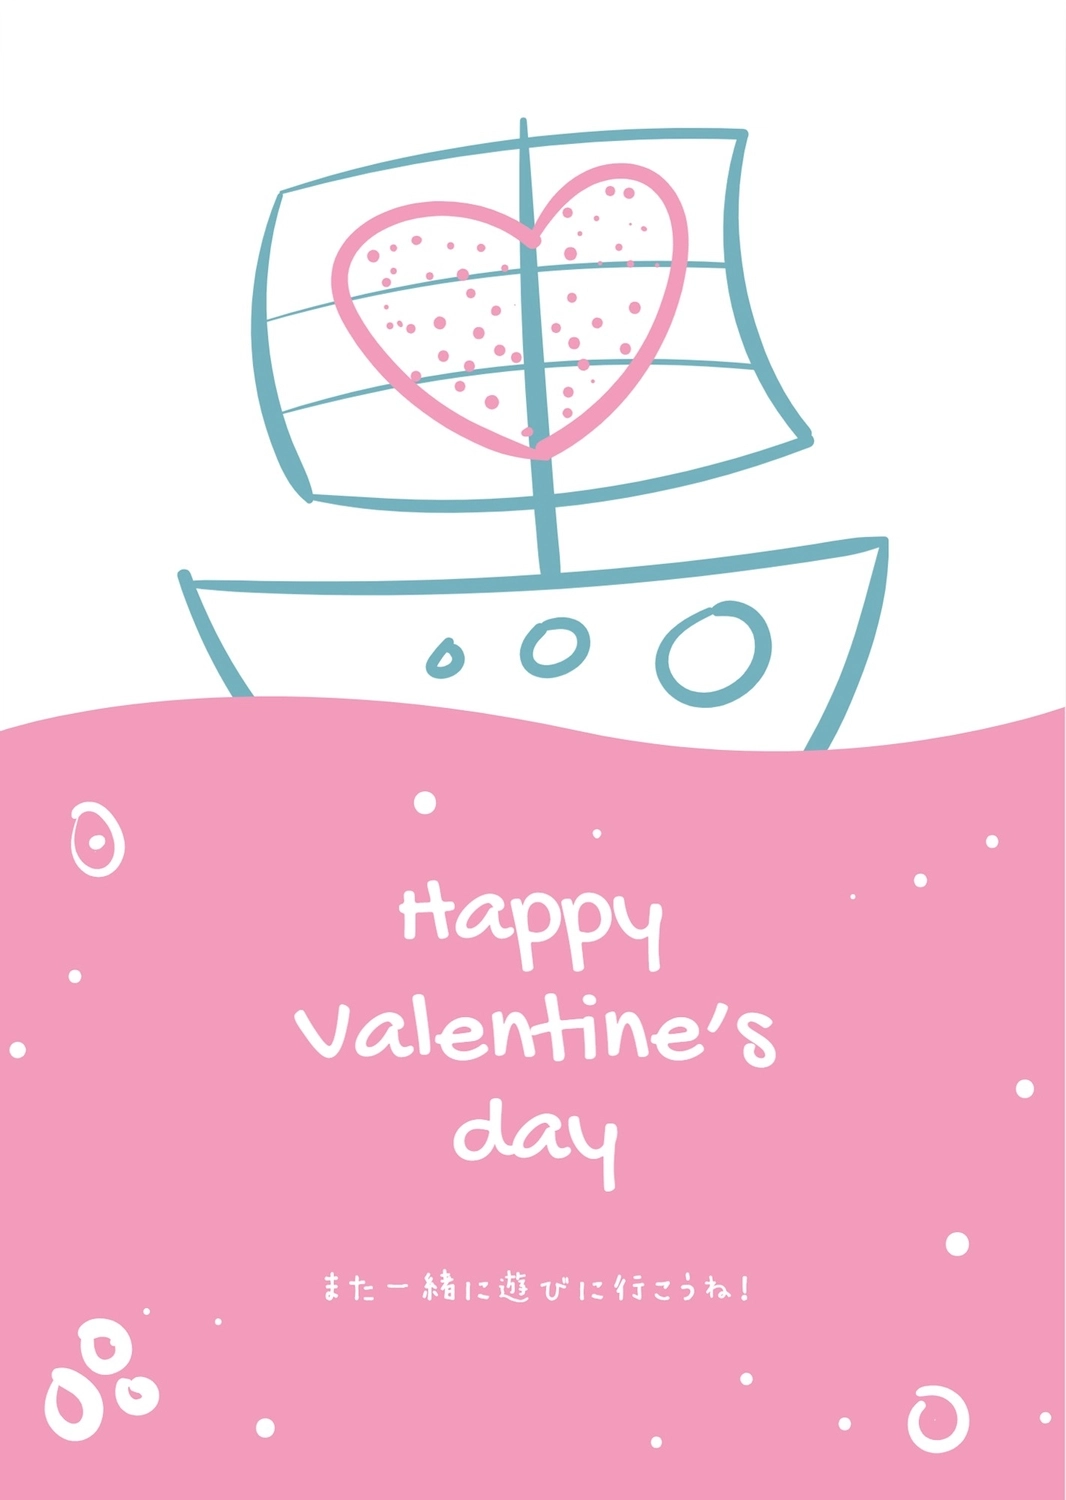 バレンタインデーグリーティングカード　ピンクの海と船, ハート, 作成, デザイン, メッセージカードテンプレート